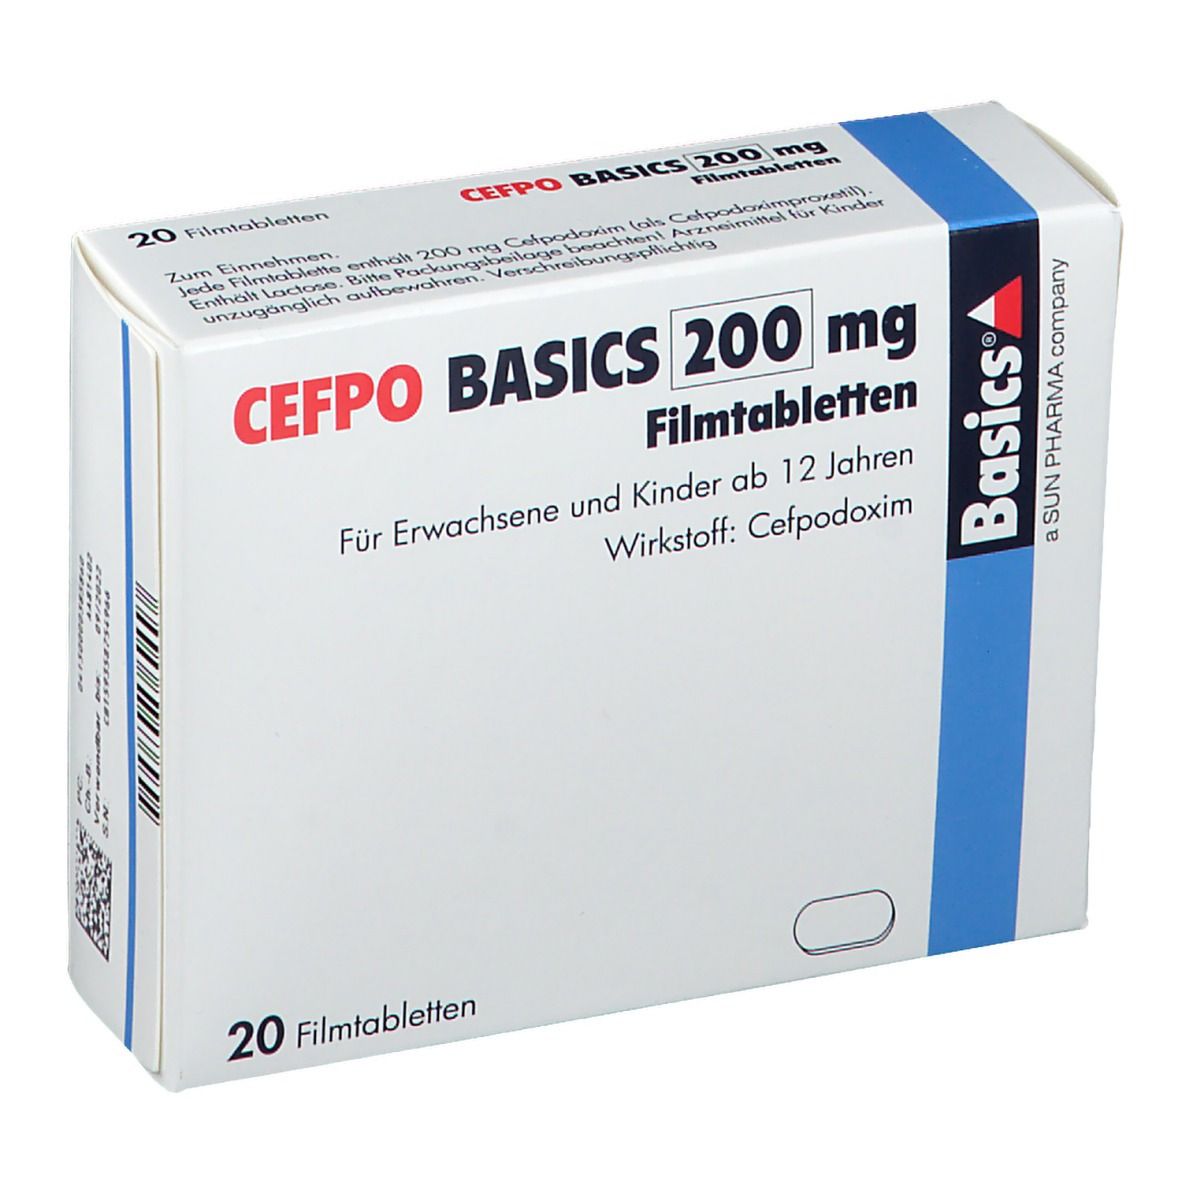 CEFPO BASICS 200 mg